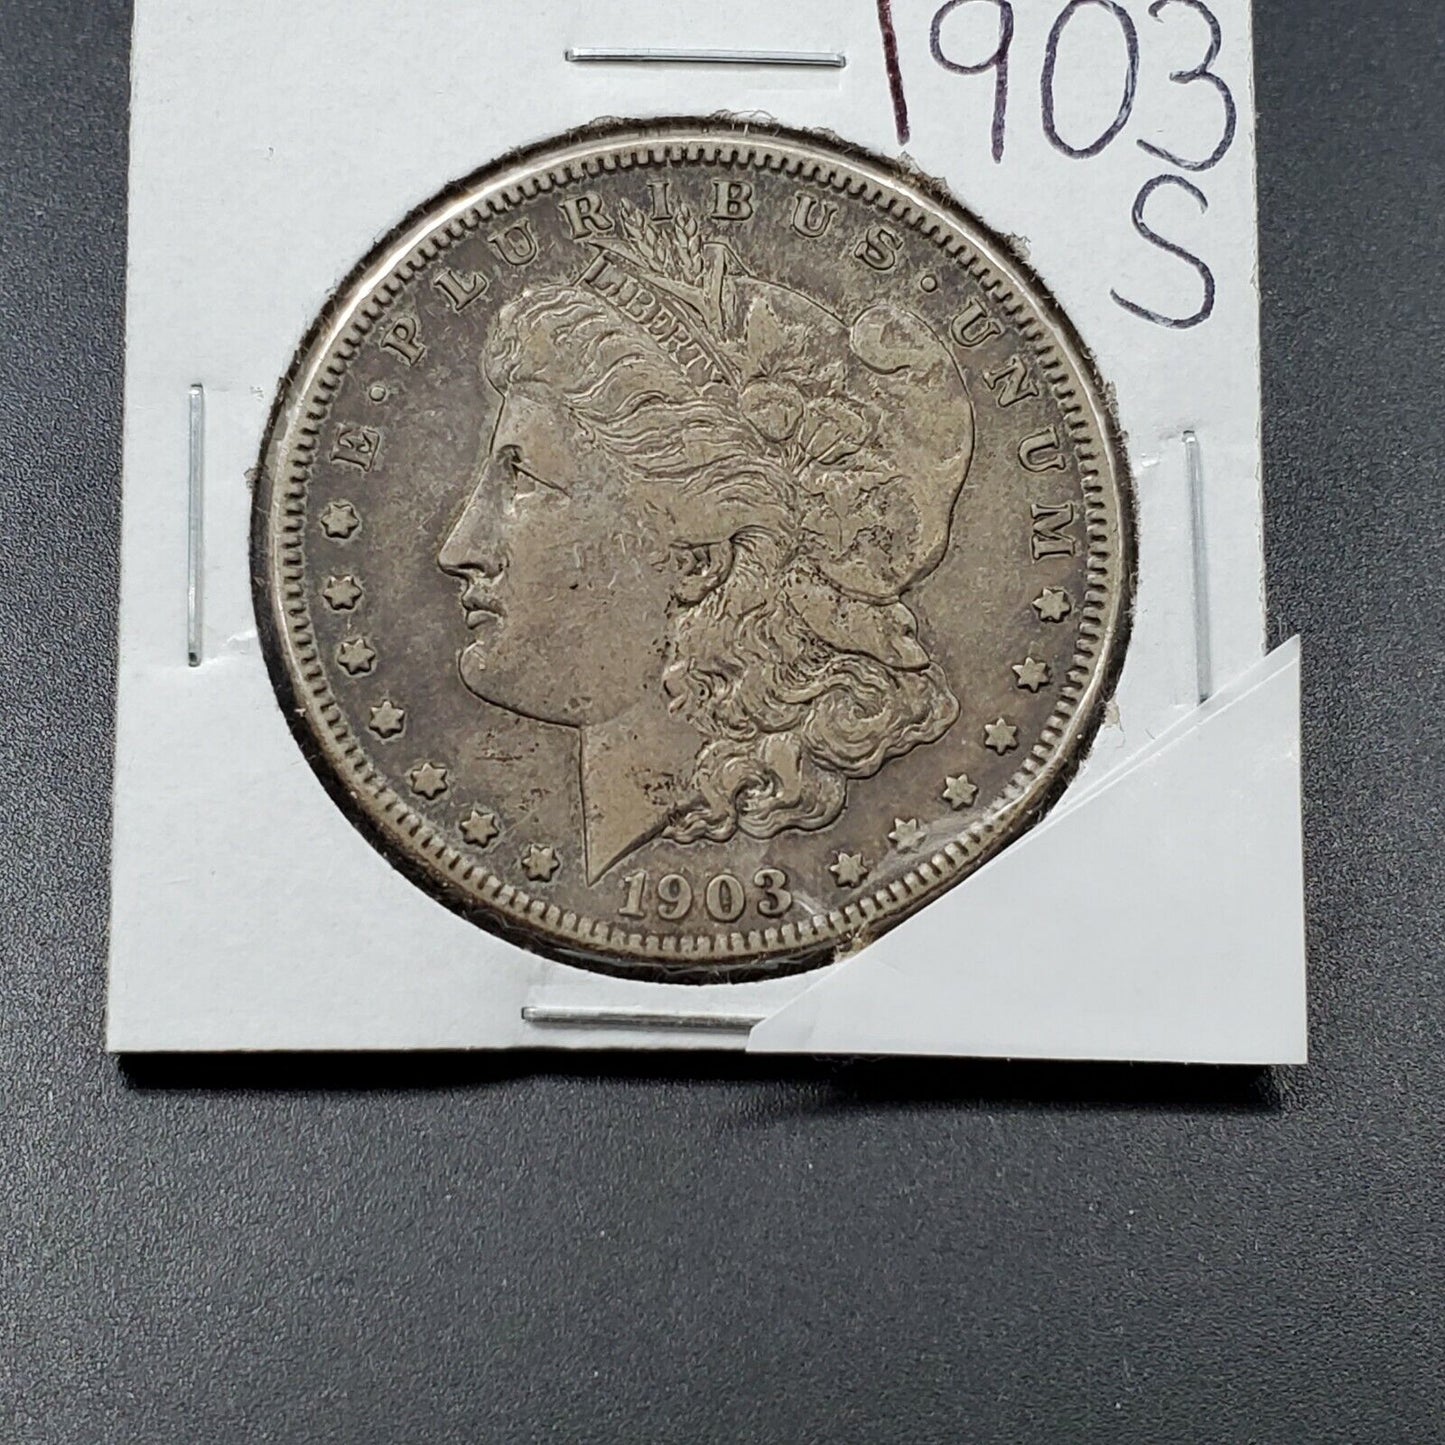 1903 S $1 Morgan Silver Eagle Dollar Coin Choice VF Very Fine Nearly XF Circ